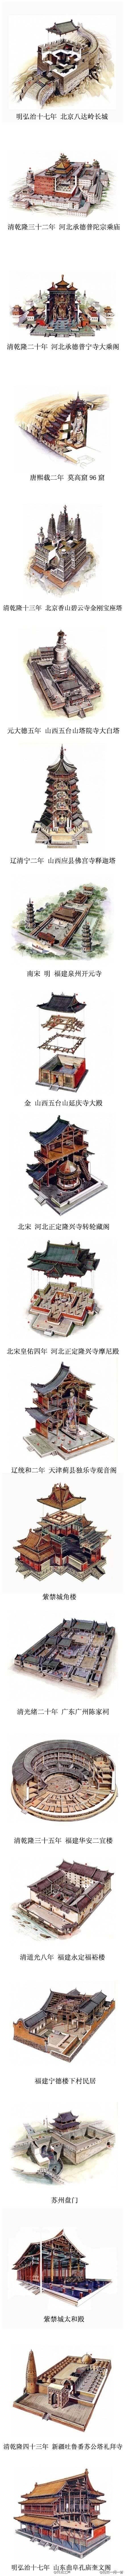 台湾学者李乾朗手绘图 以解剖图法展现中国建筑史经典建筑